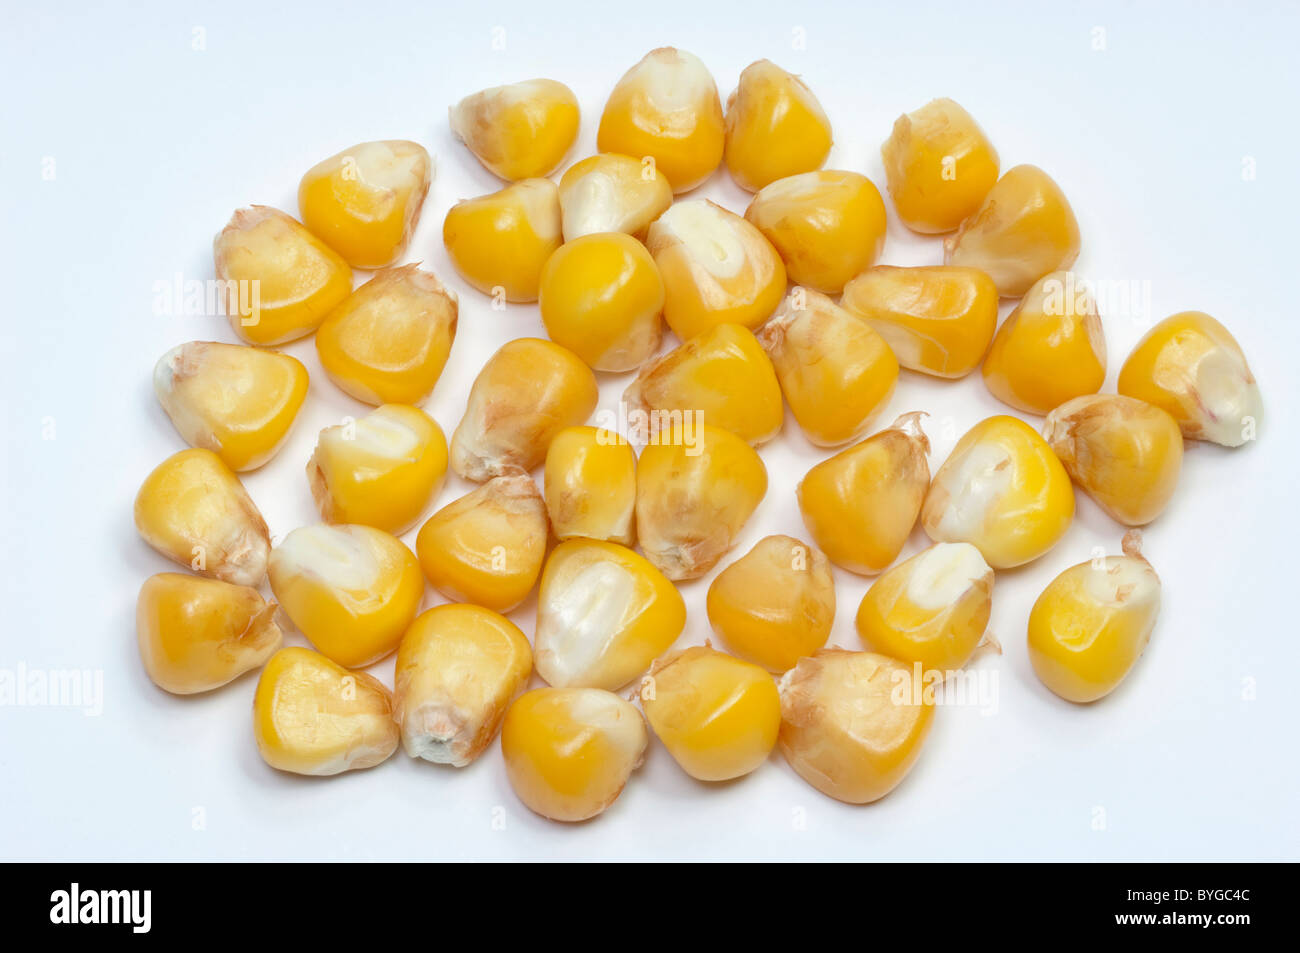 Le maïs, le maïs (Zea mays), amandes, studio photo sur un fond blanc. Banque D'Images